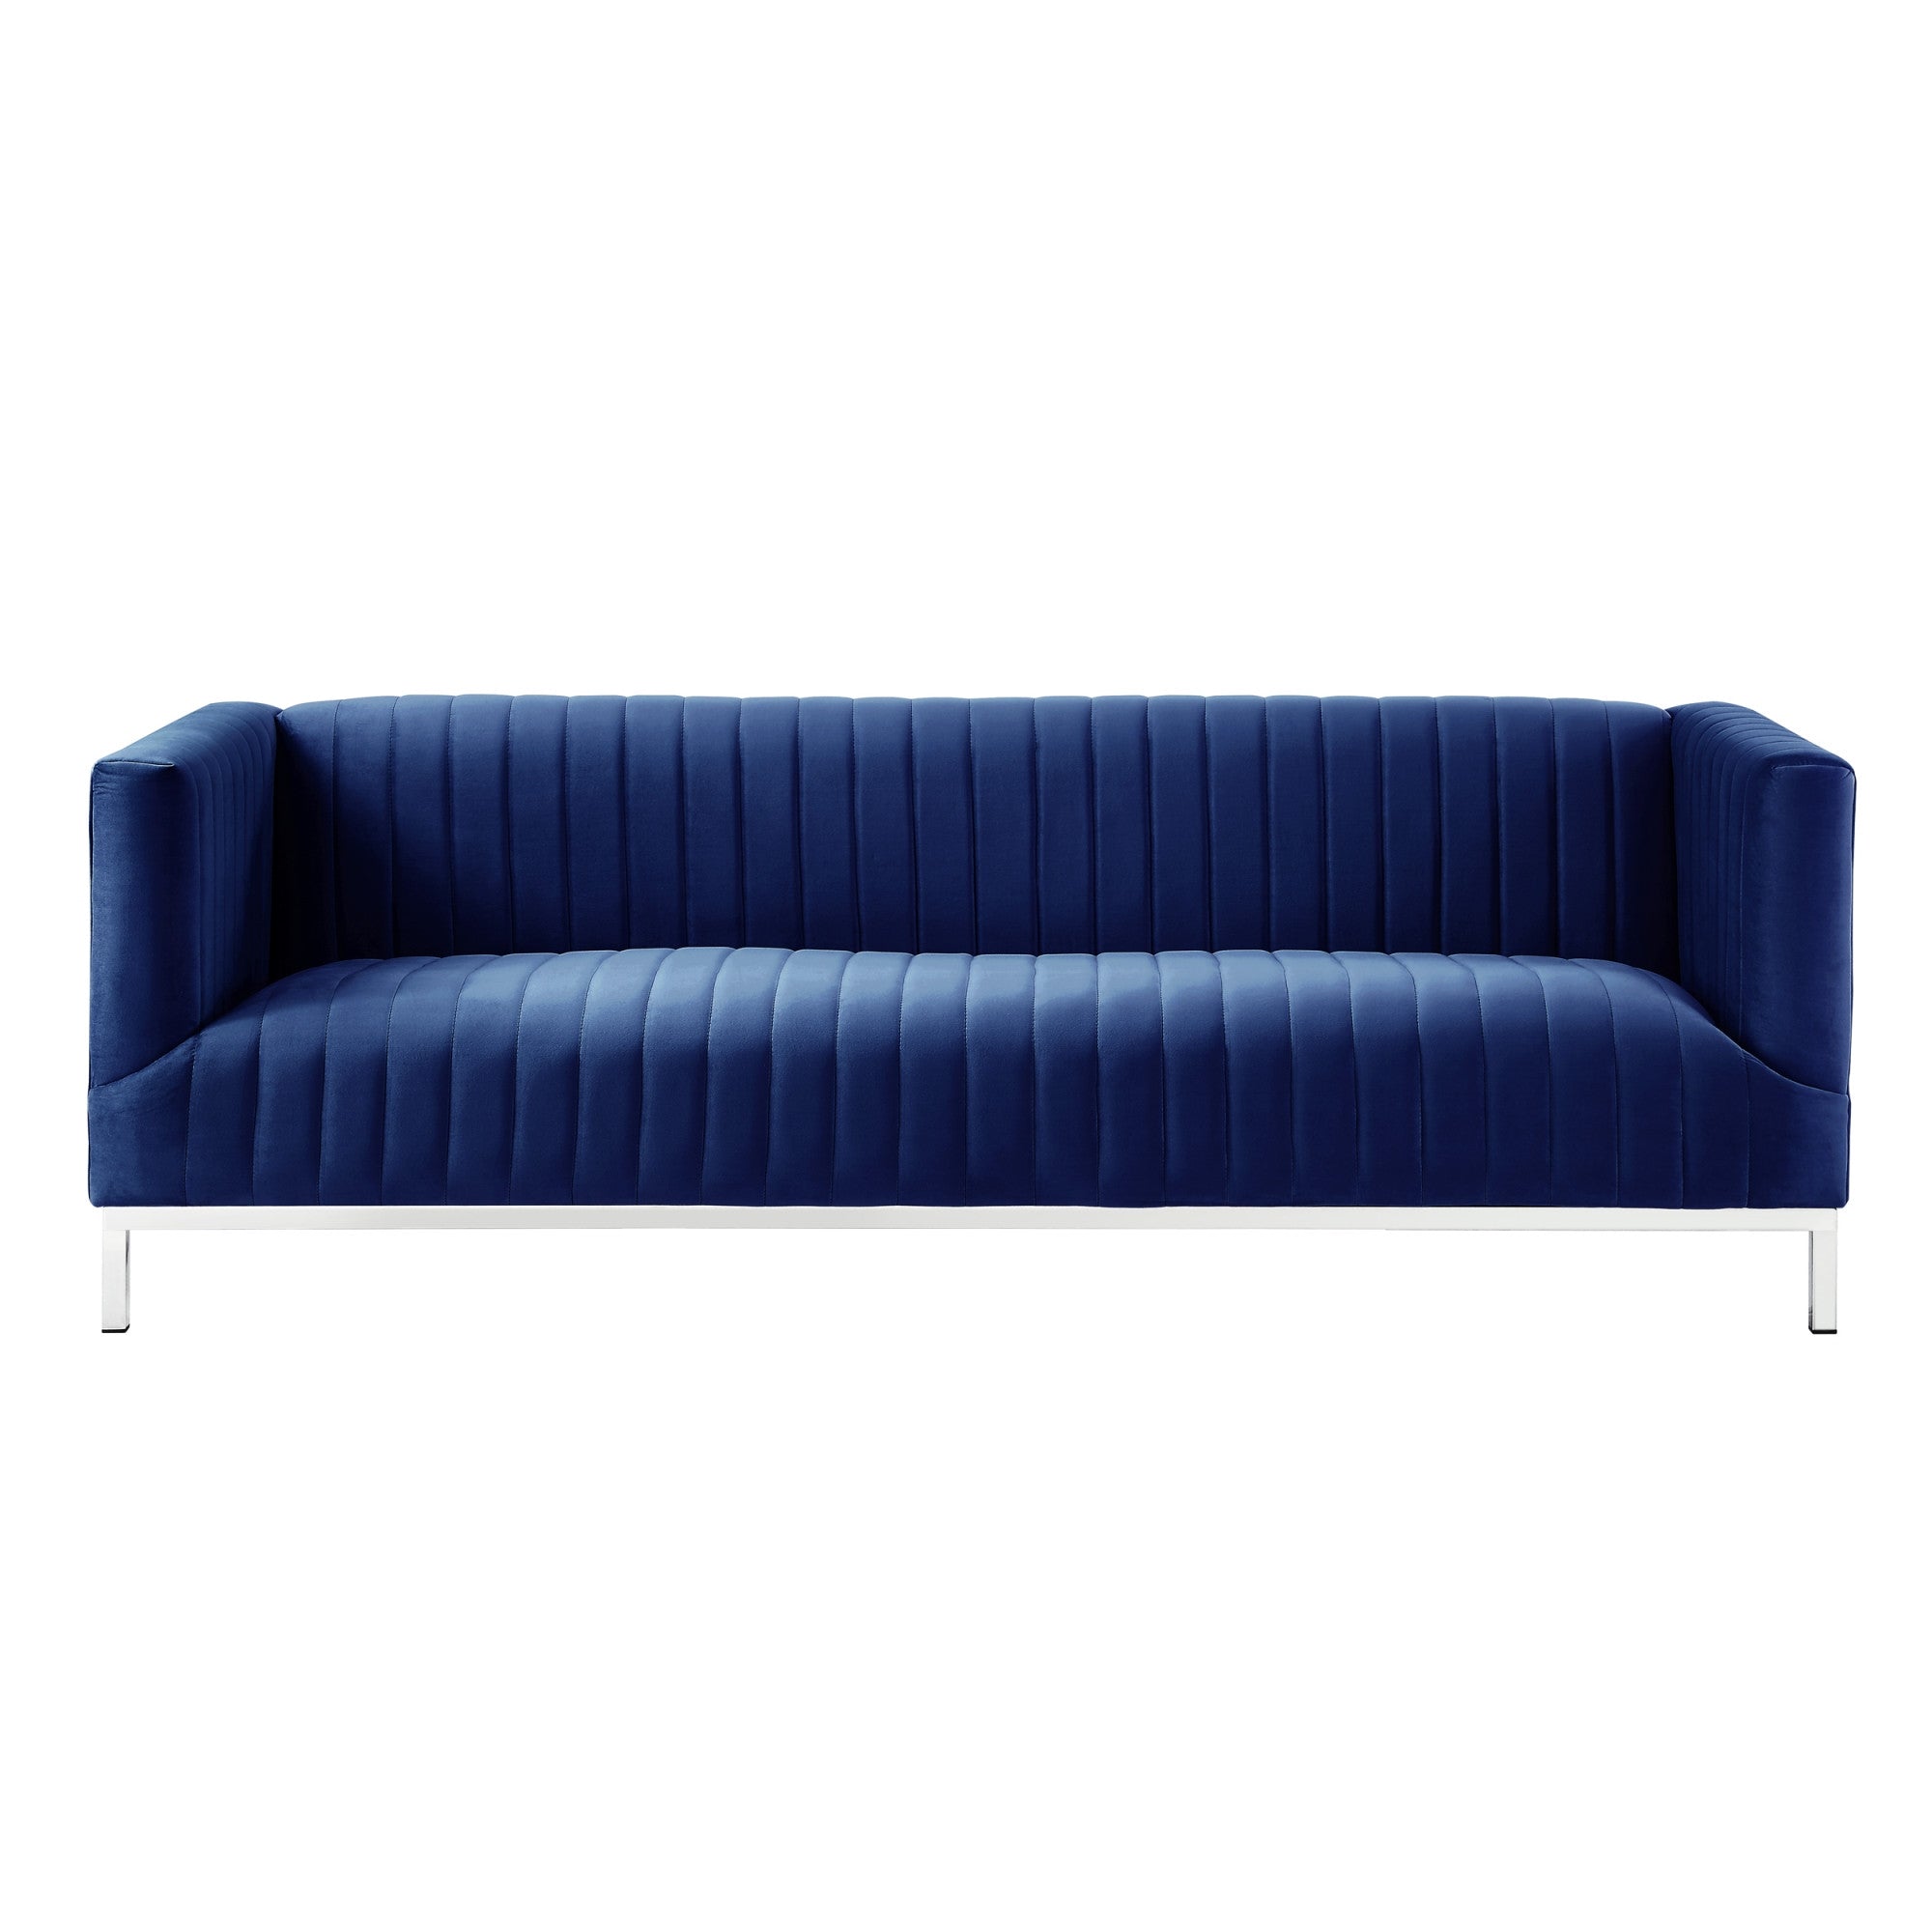 85" Navy Blue Velvet and Silver Sofa